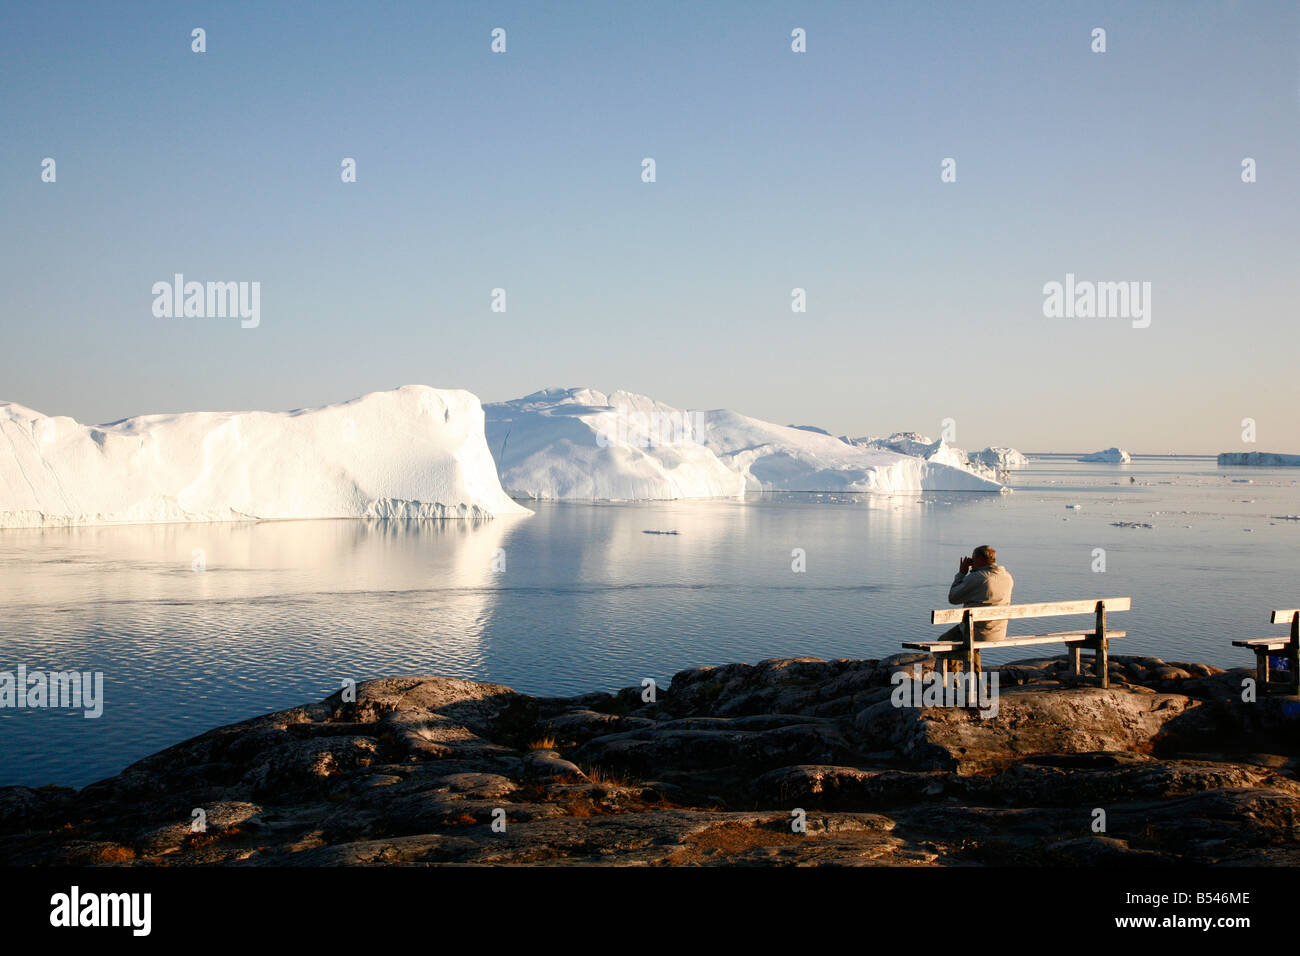 Août 2008 - l'homme regardant le Glacier Kangerlua Ilulissat Sermeq Kujalleq également connu sous le nom de baie de Disko, Ilulissat, Groenland Banque D'Images